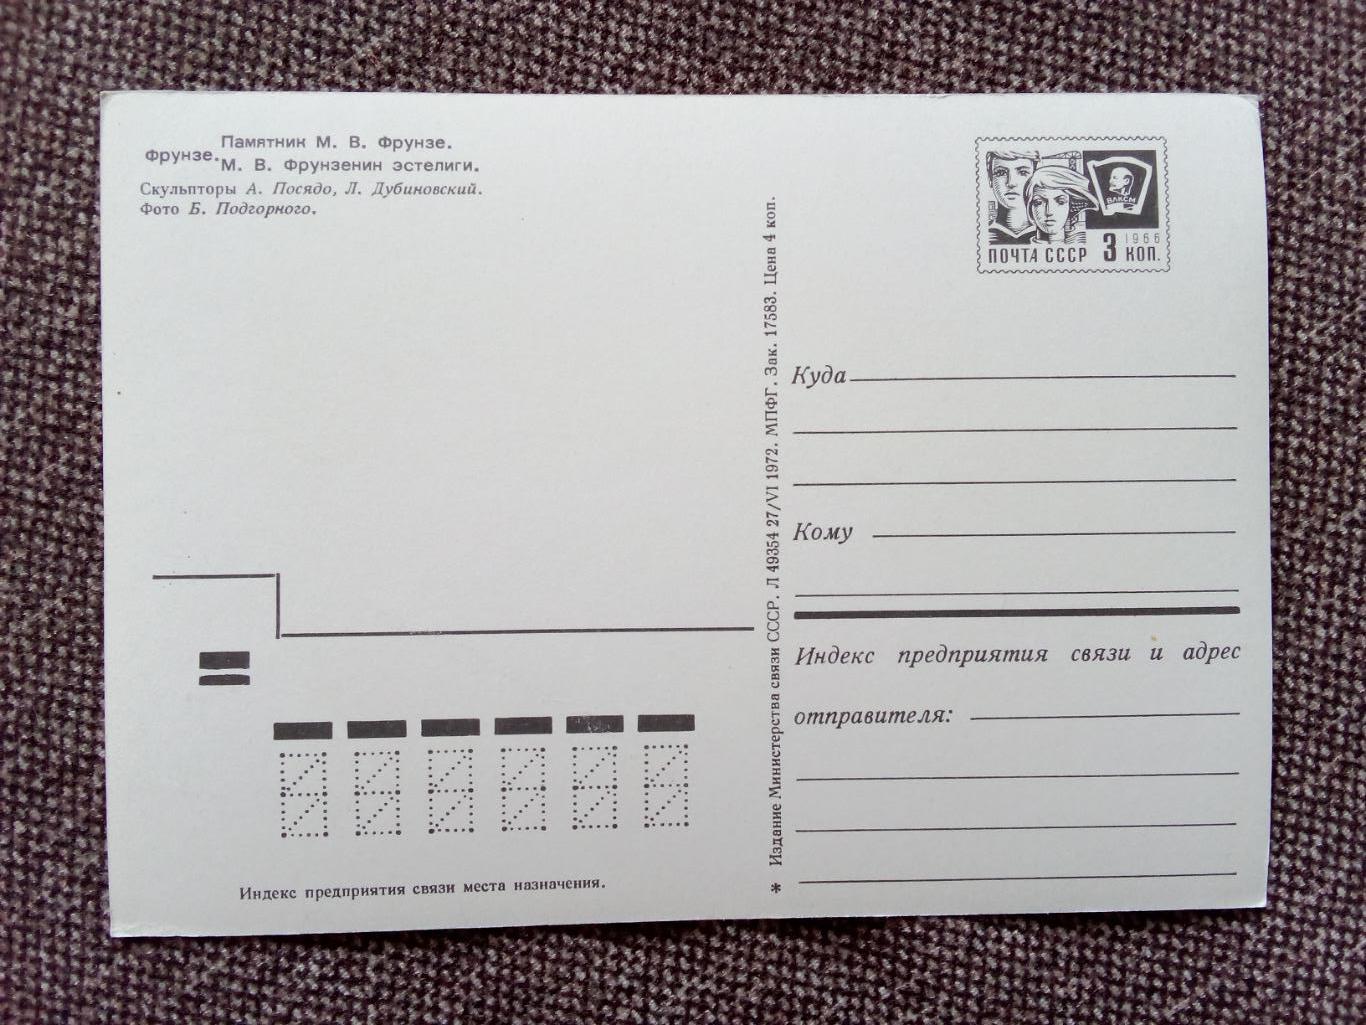 Киргизская ССР . Фрунзе - Памятник М.В. Фрунзе 1972 г. (почтовая с маркой) 1